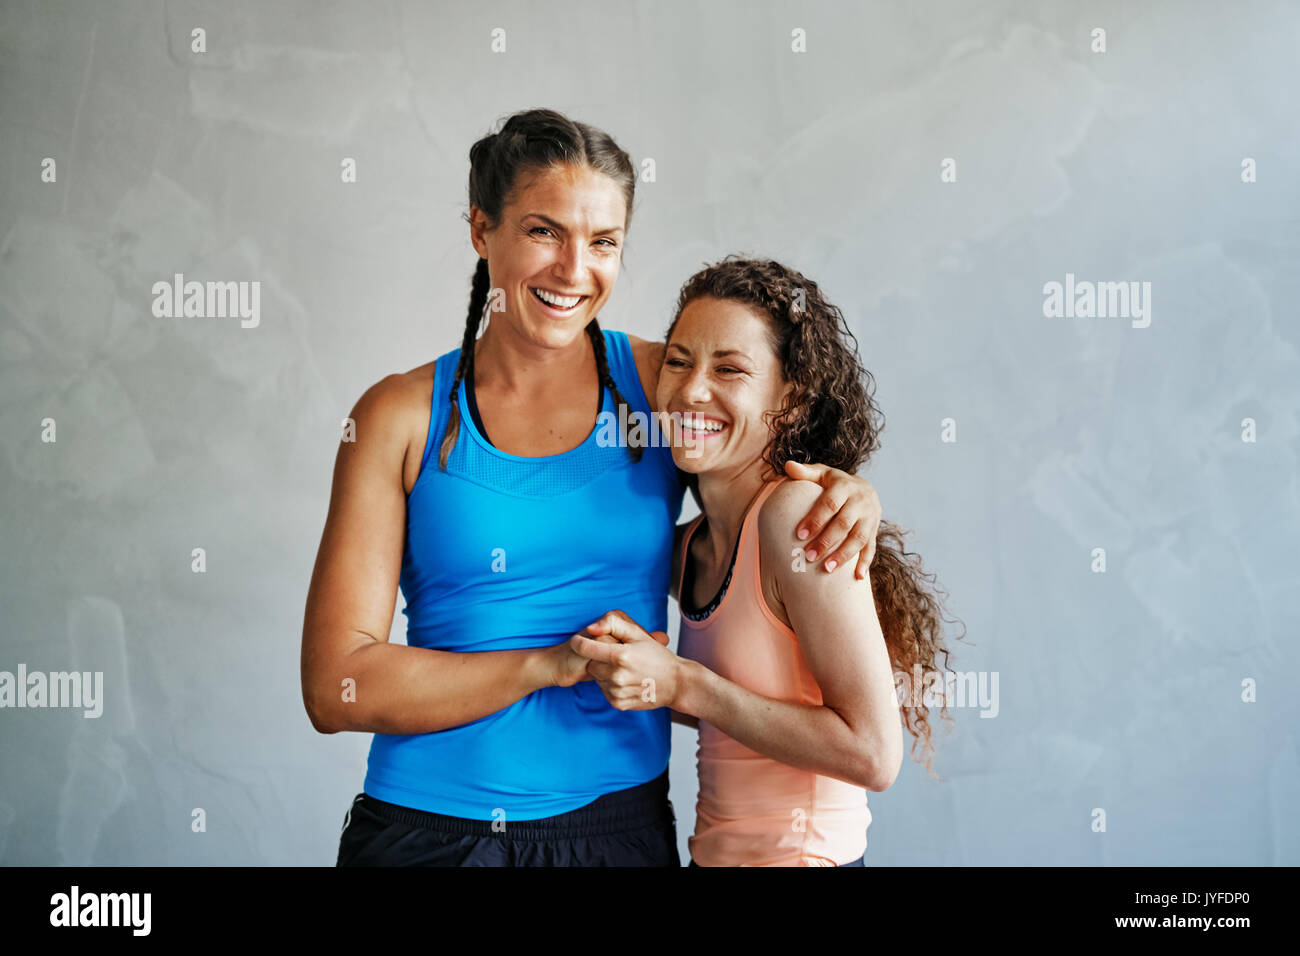 Zwei lächelnde junge weibliche Freunde in Sportbekleidung hohe fiving einander beim pushups zusammen tun auf dem Boden einer Turnhalle Stockfoto